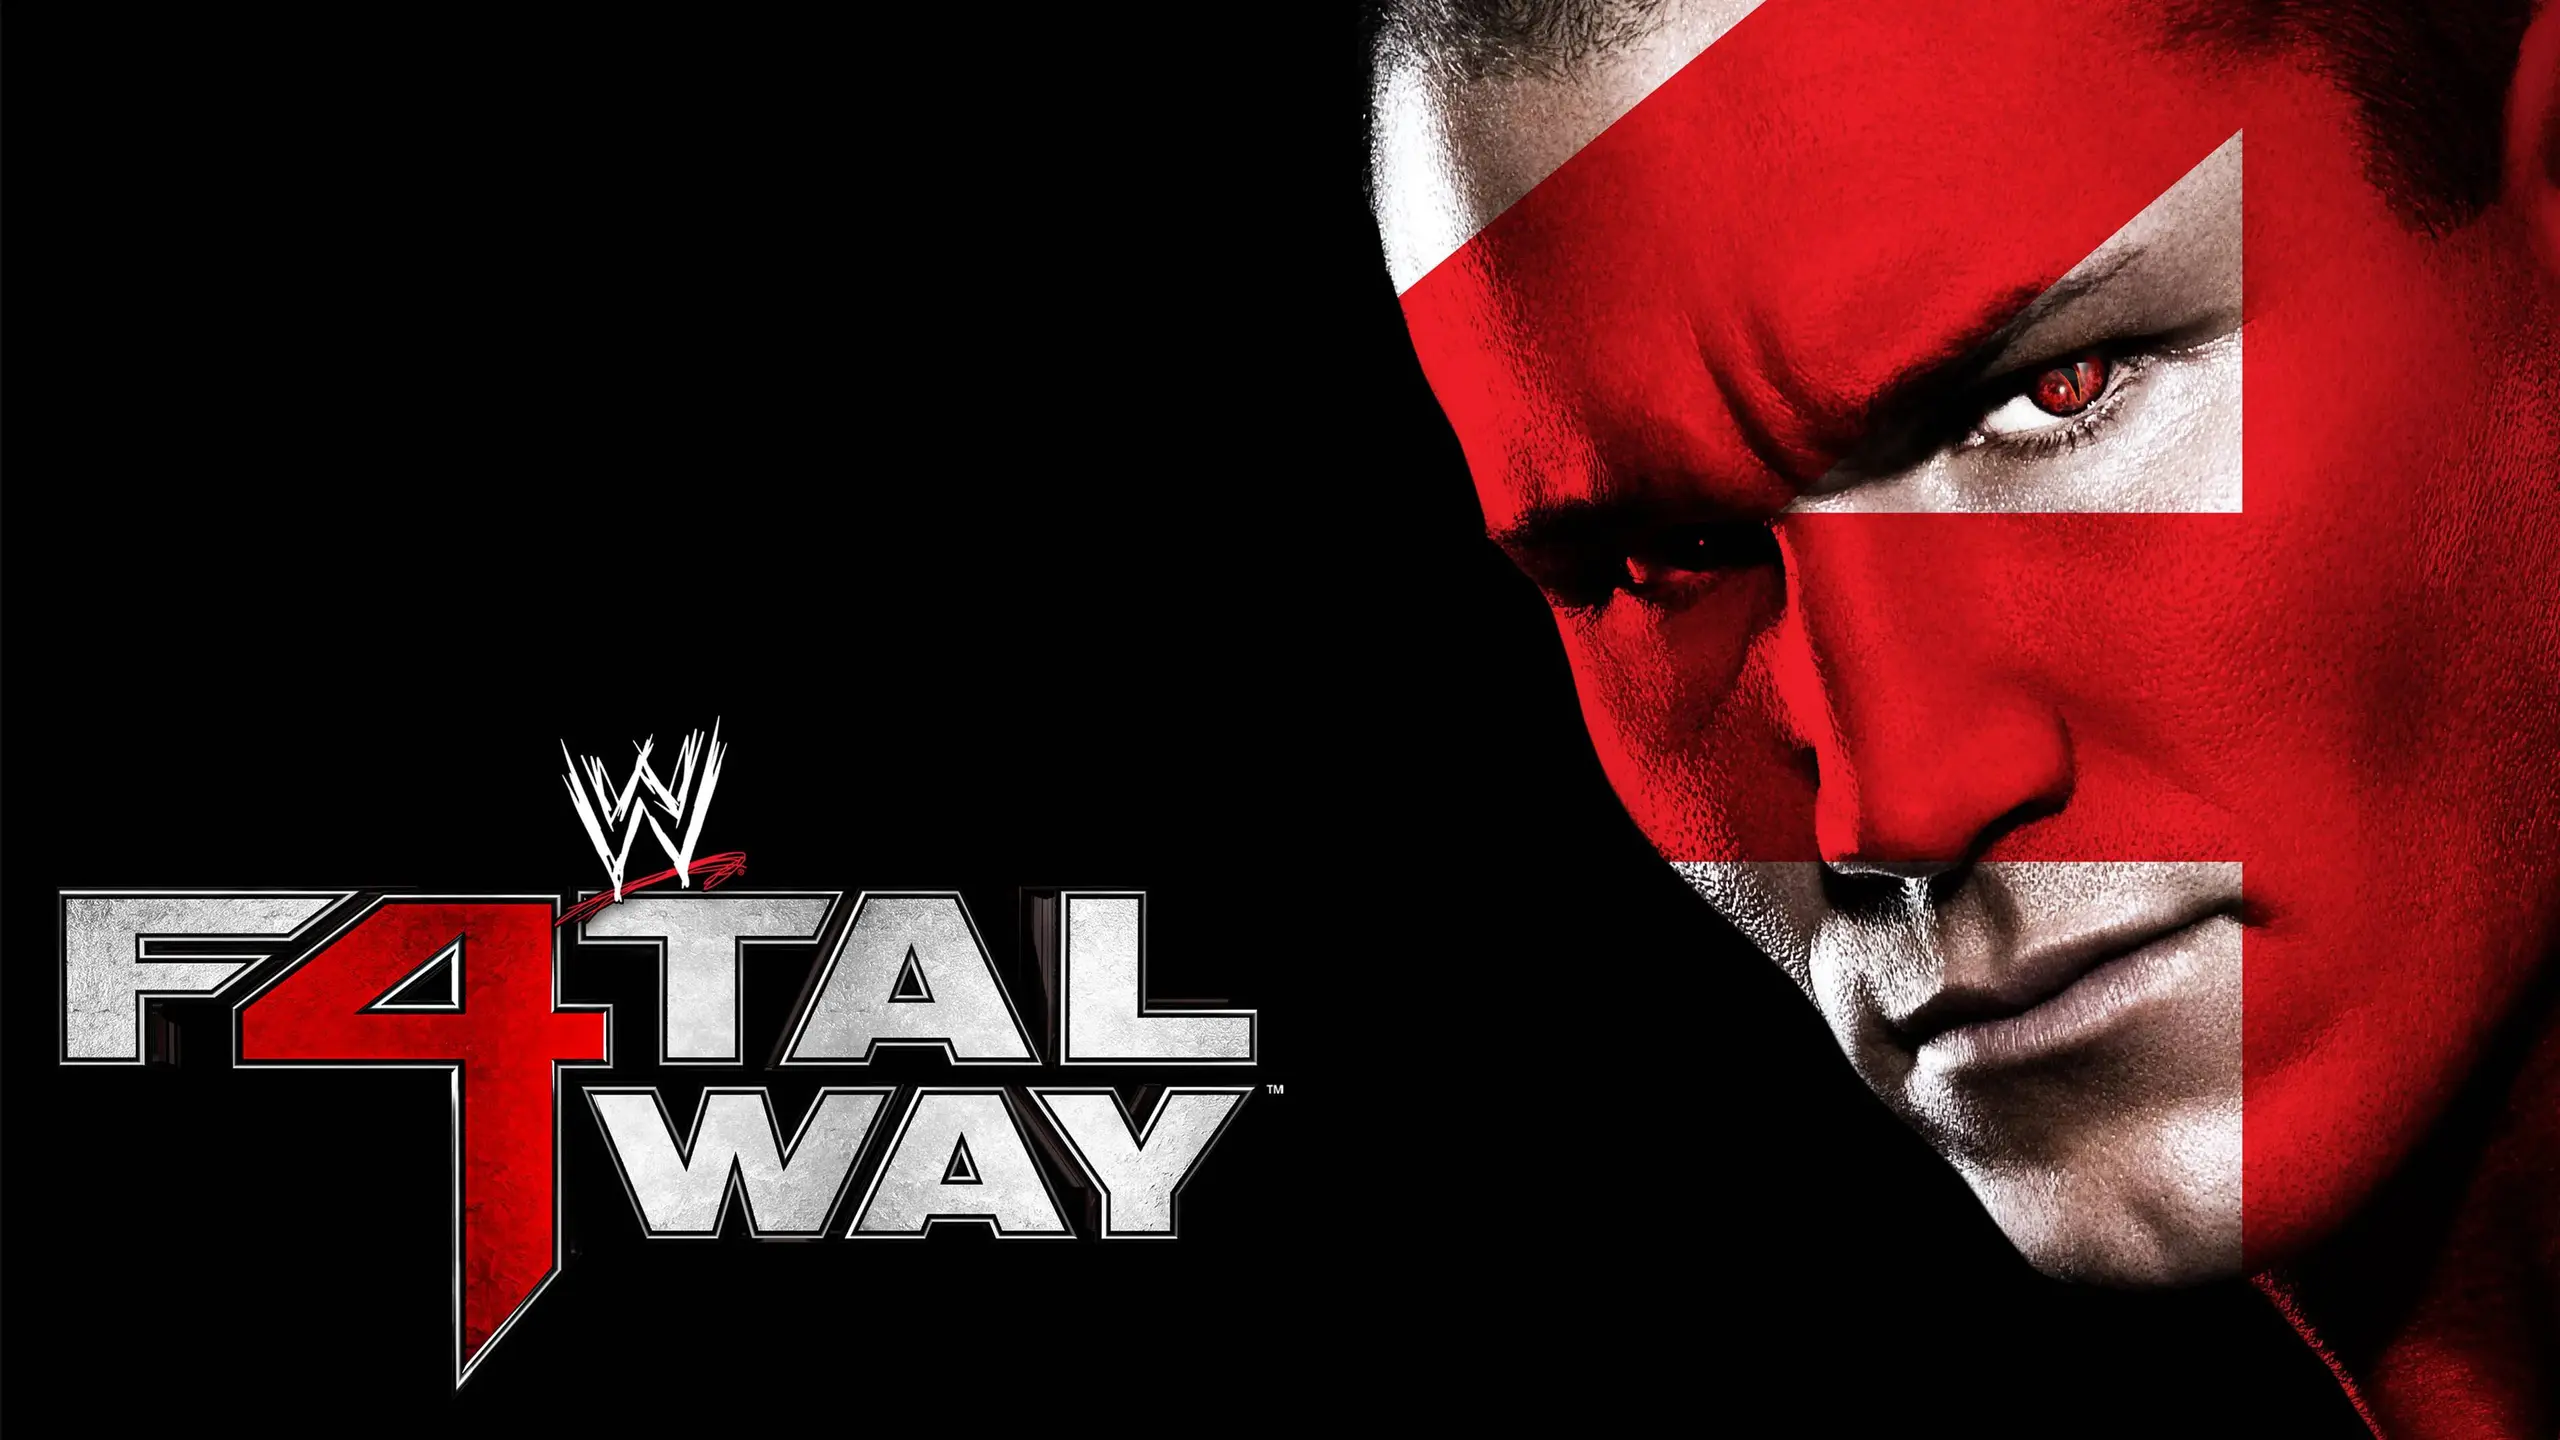 WWE Fatal 4-Way 2010